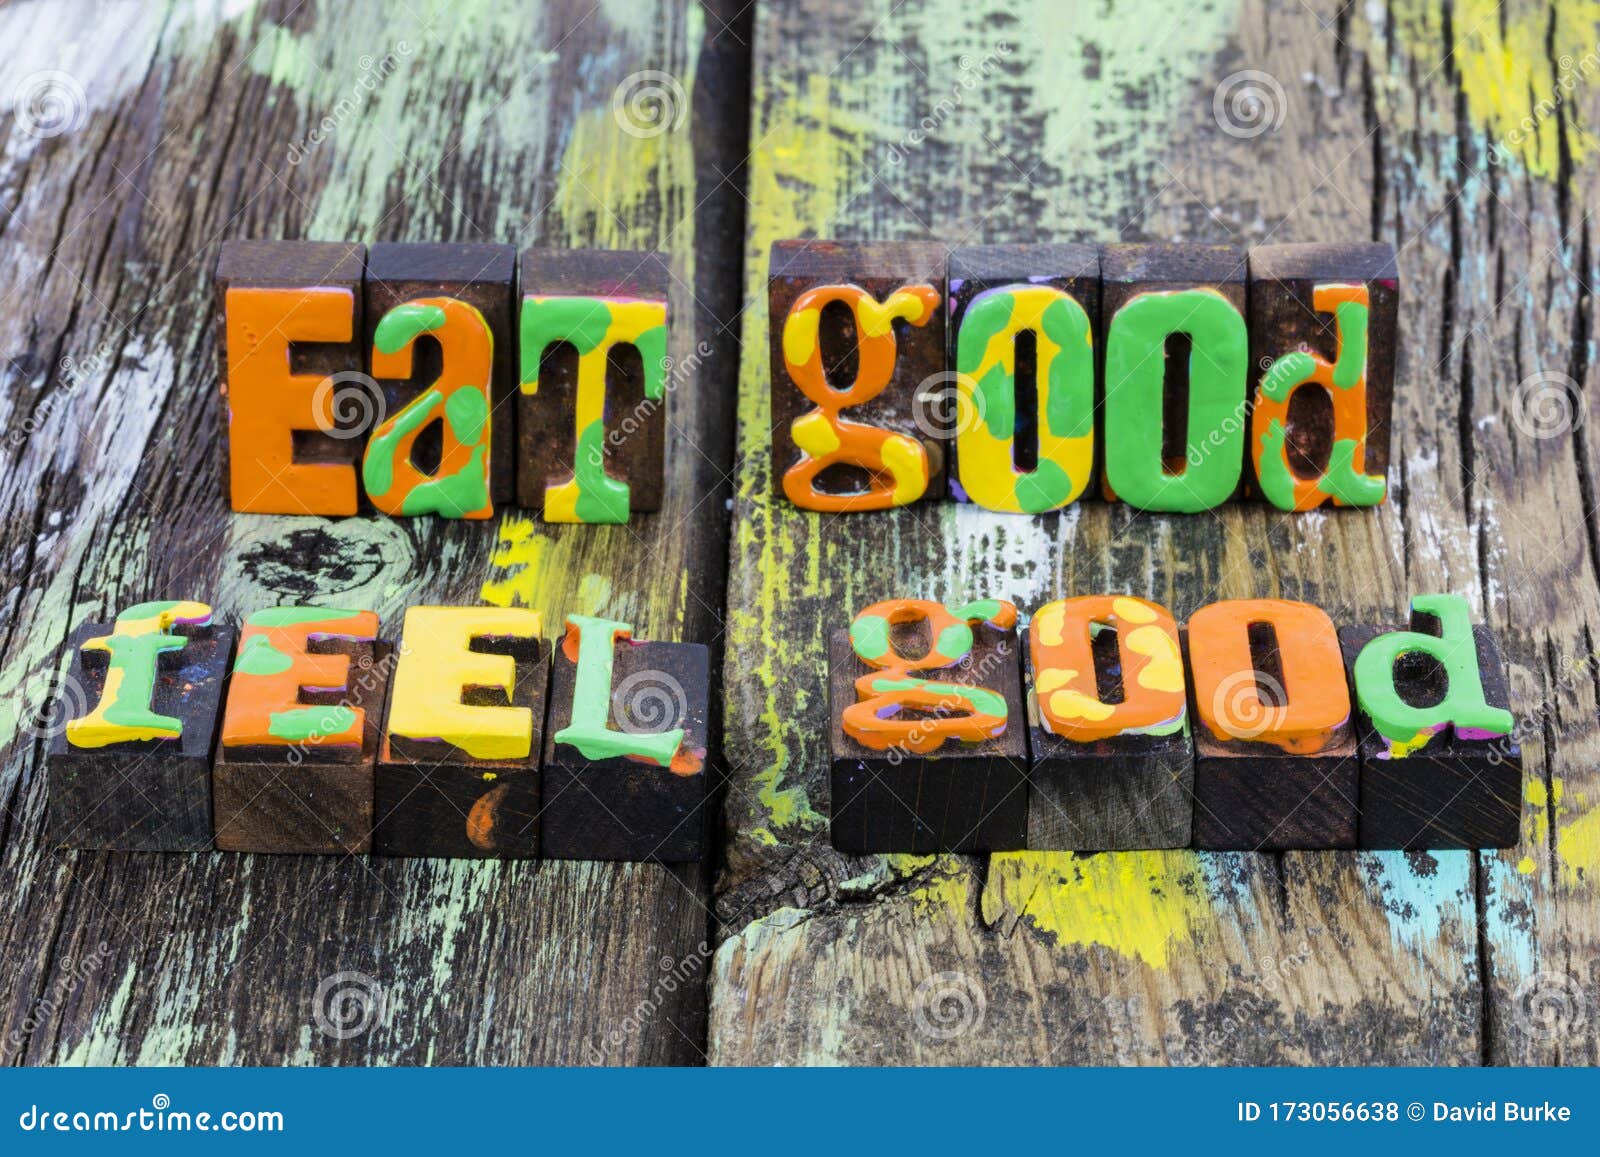 eat good health food feel great healthy wellness